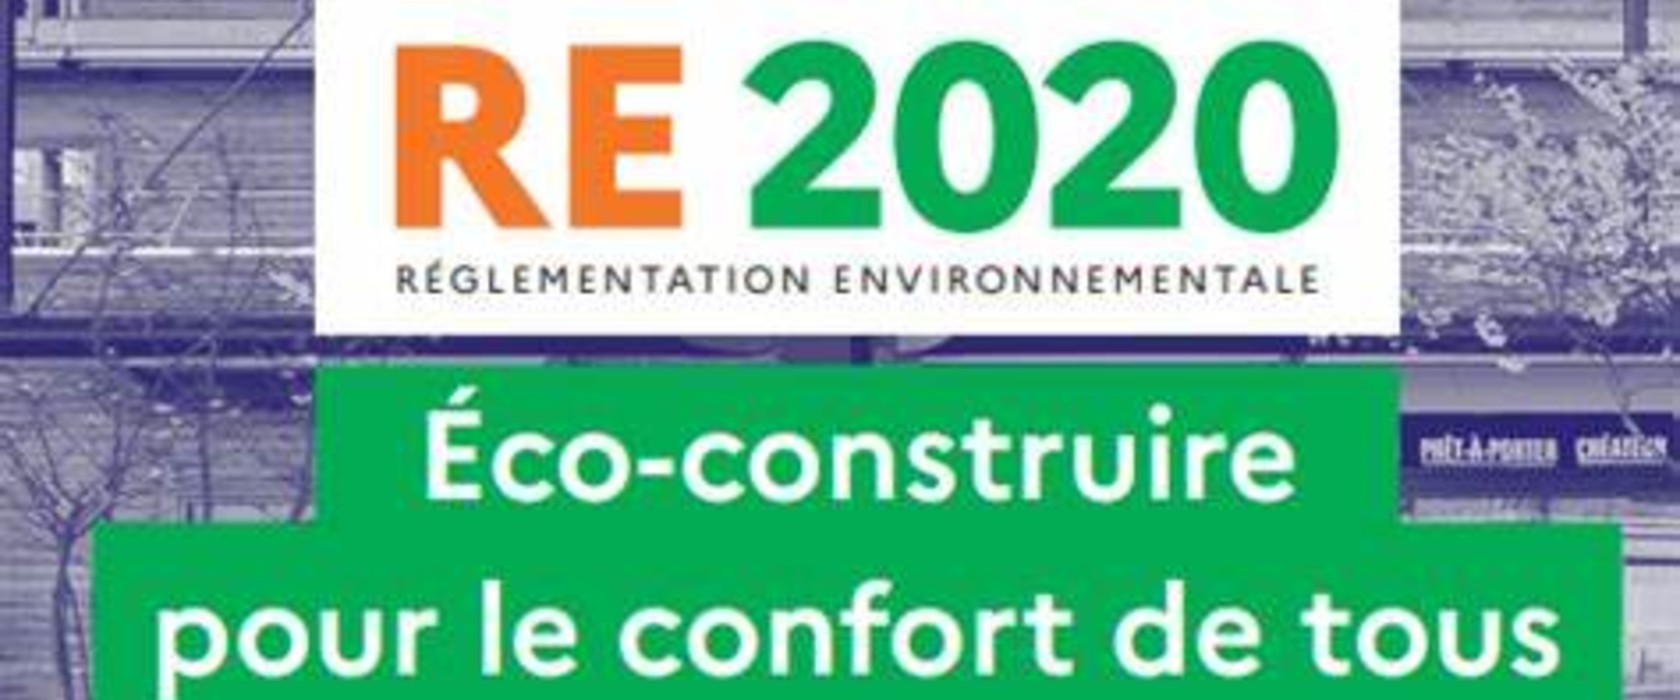 RE2020_ecoconstruire